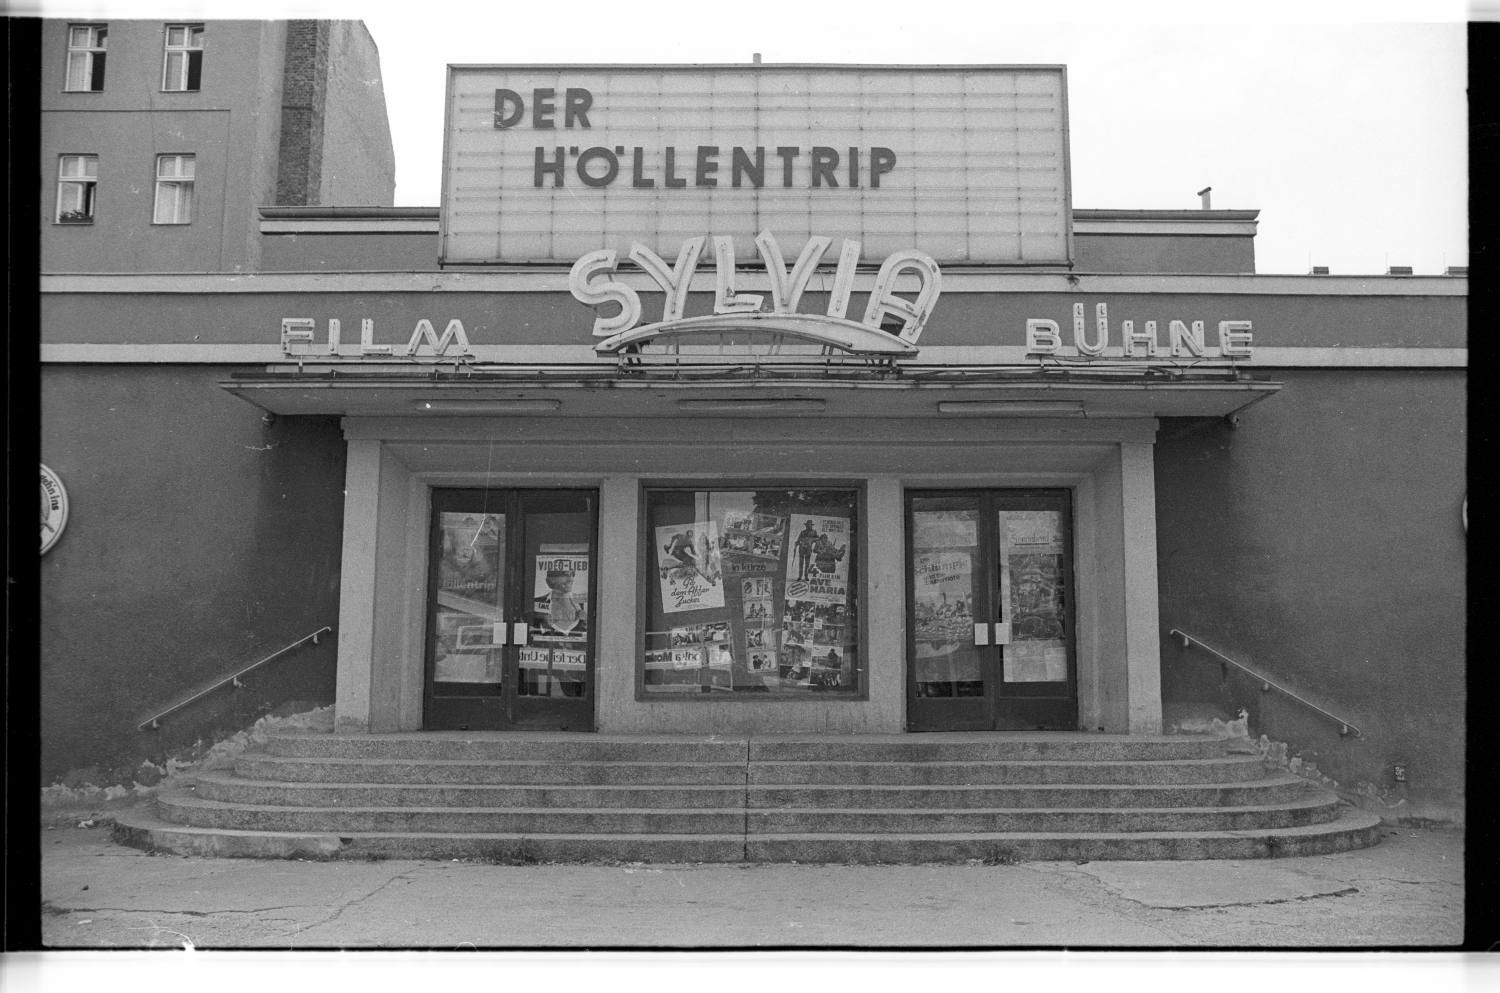 Kleinbildnegative: Kino "Sylvia", Hauptstr. 116, 1982 (Museen Tempelhof-Schöneberg/Jürgen Henschel RR-F)